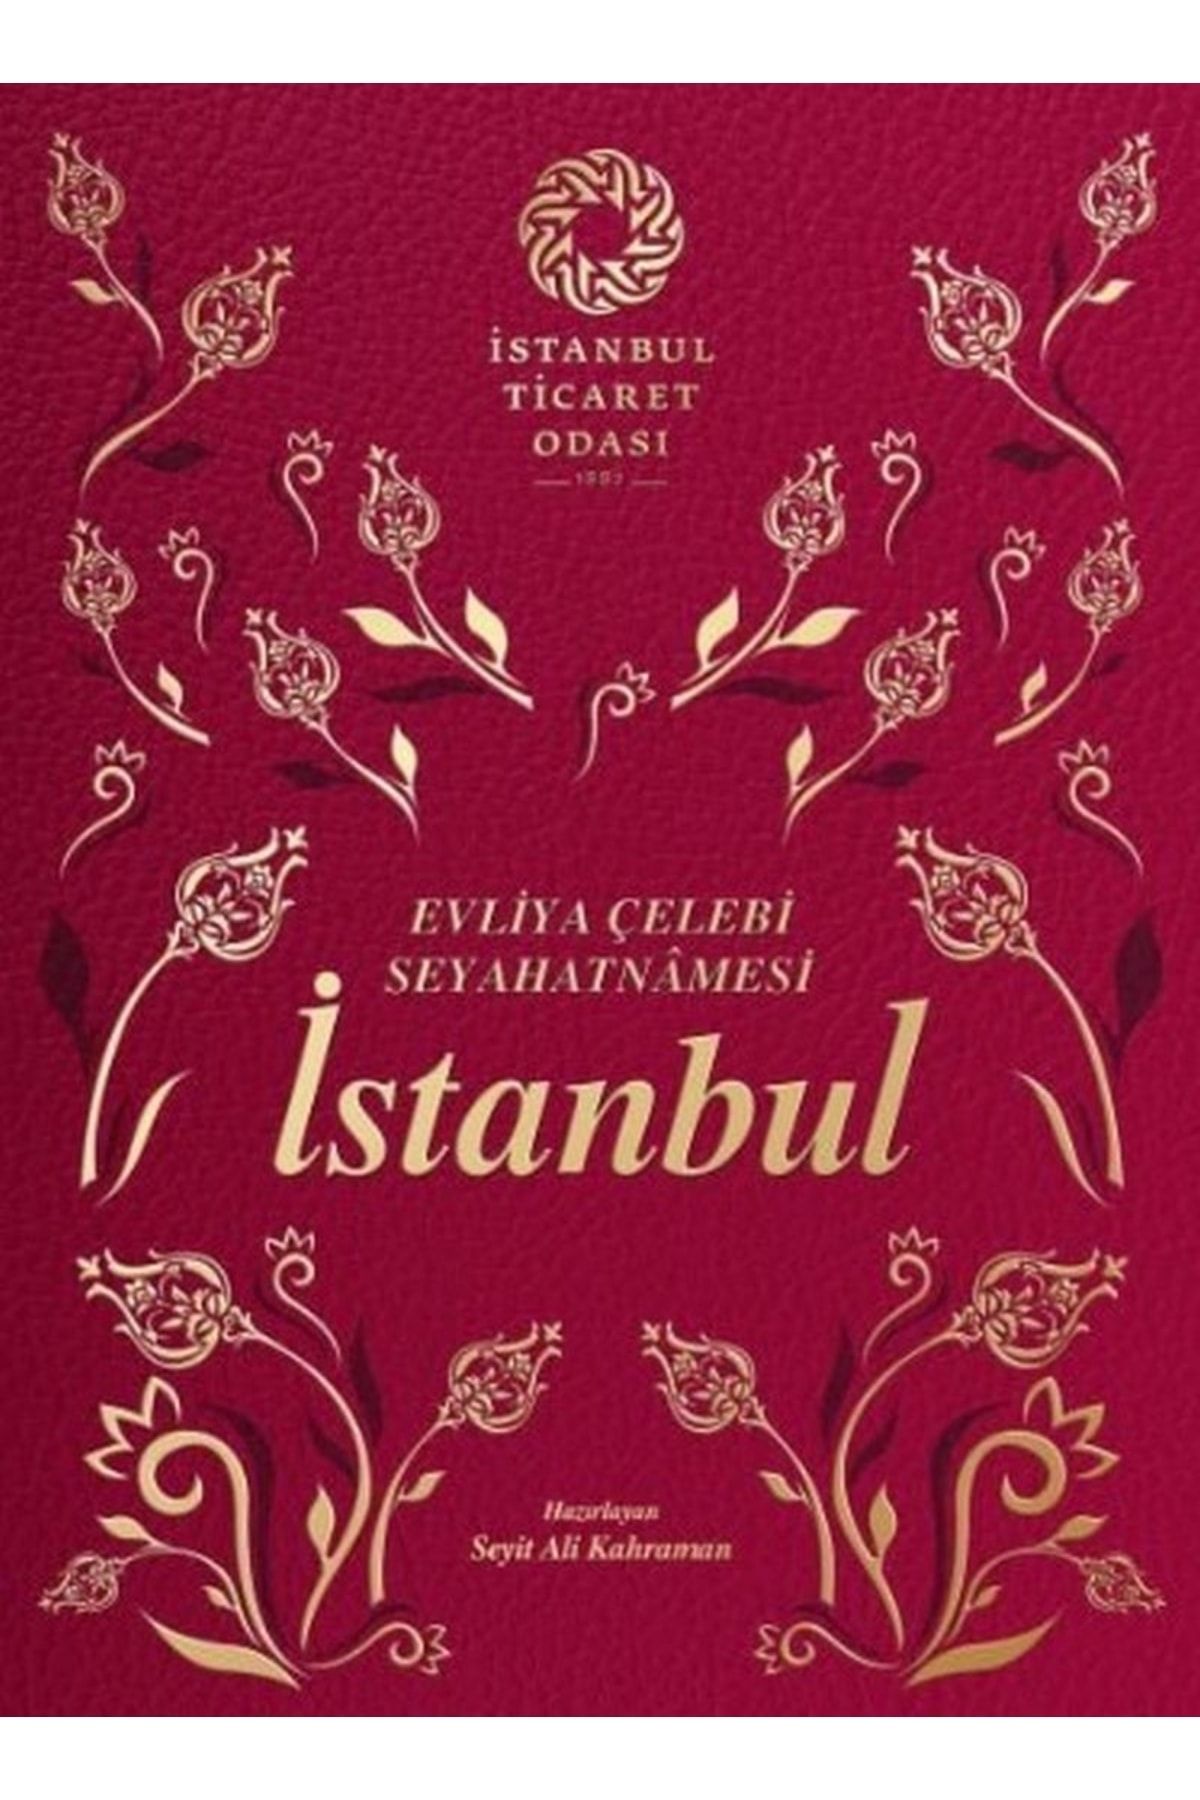 İstanbul Ticaret Odası Evliya Çelebi Seyahatnamesi: Istanbul (ciltli)